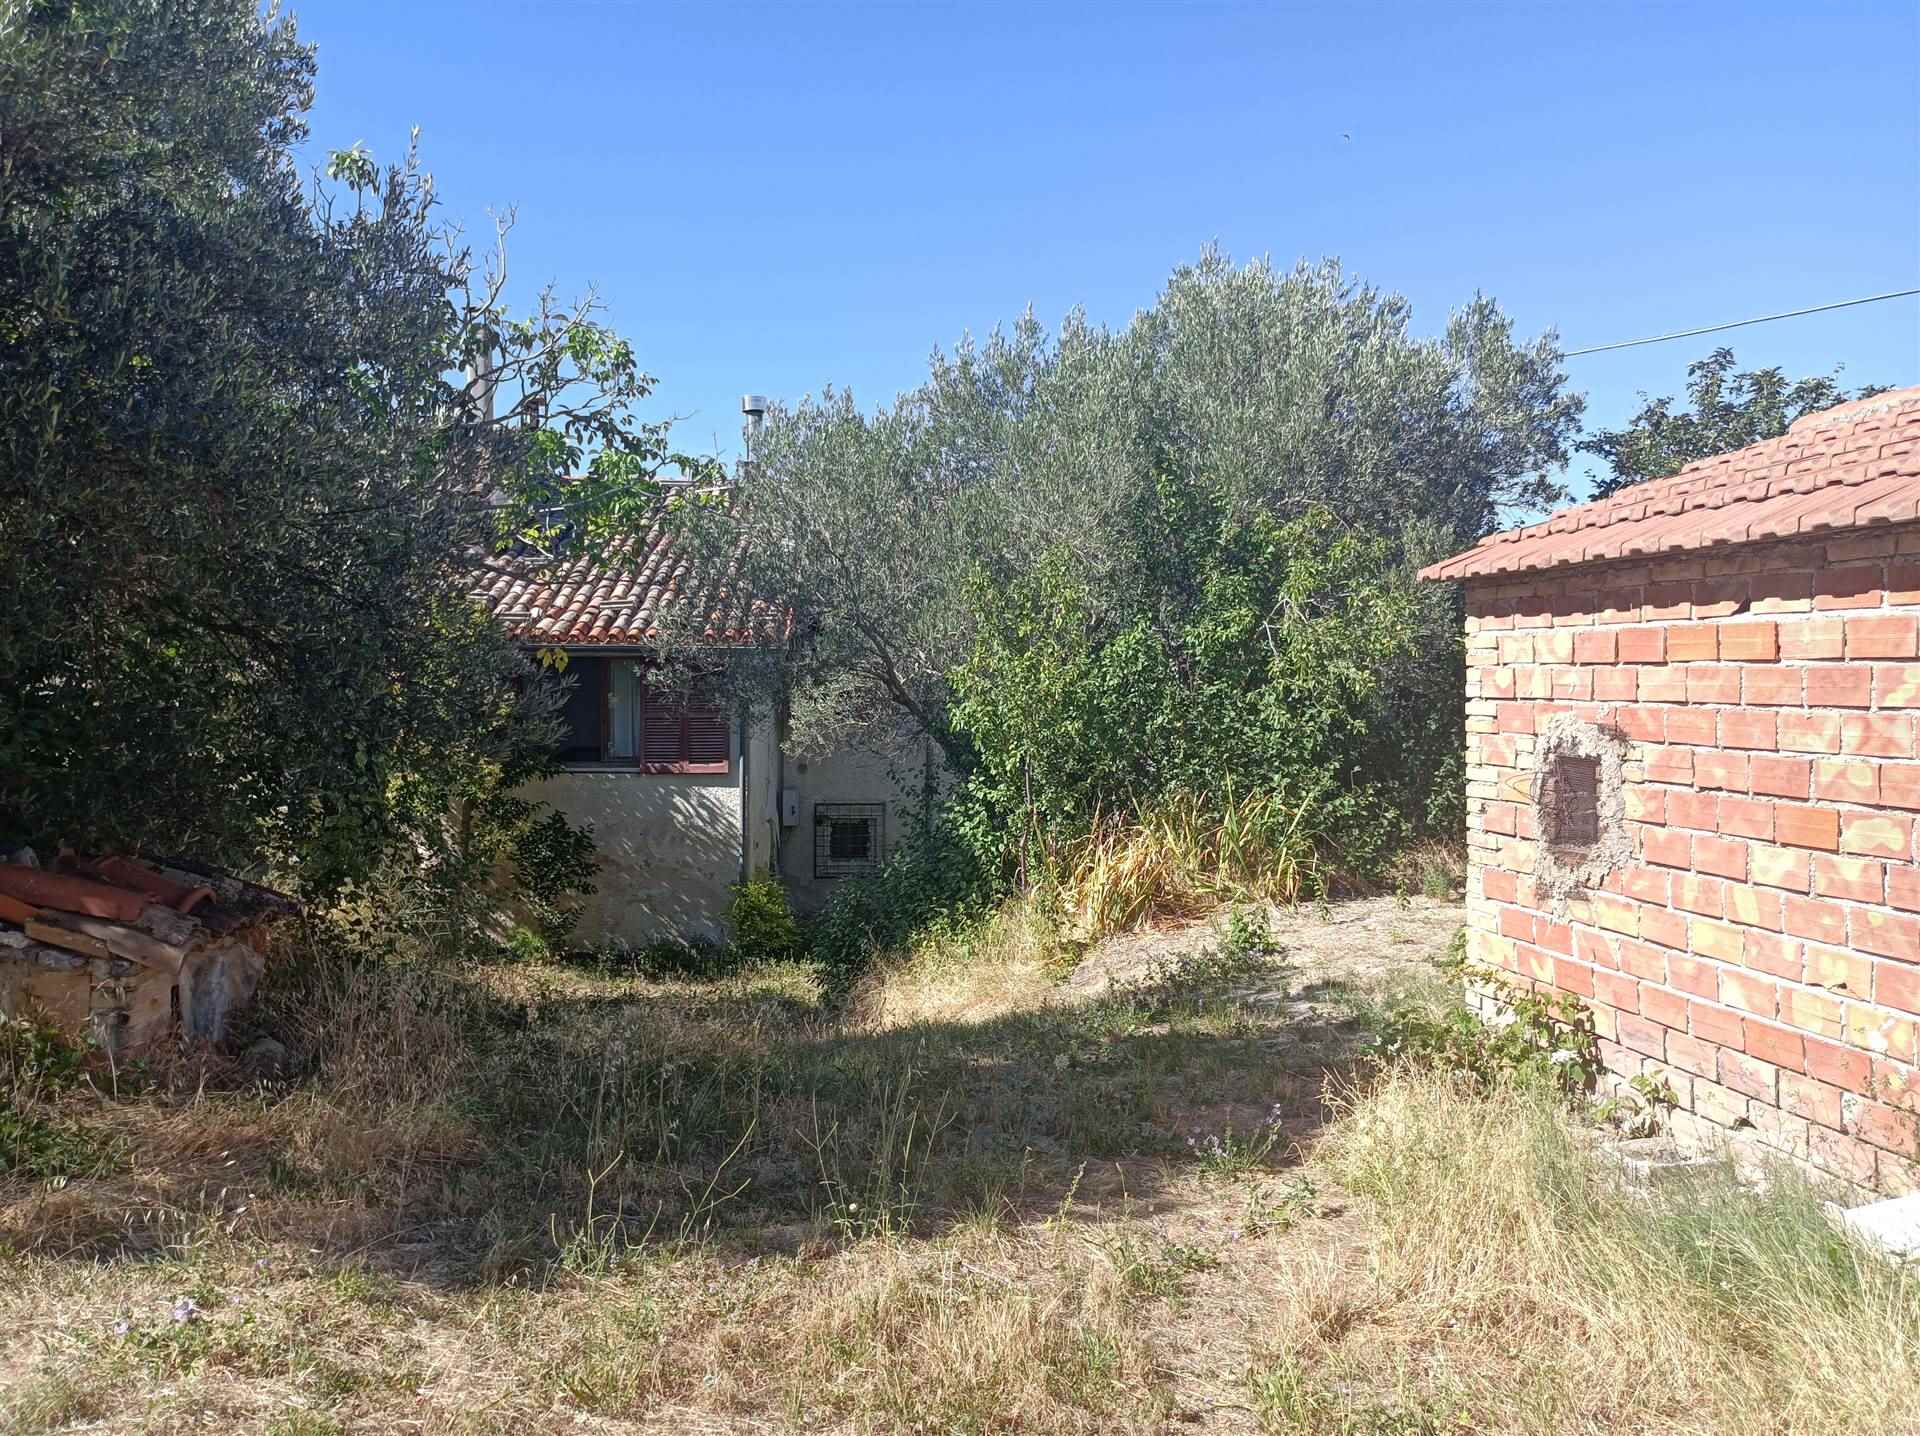 House for sale in San Severino Marche, MarcheF_249809 ima38451-F_249809.